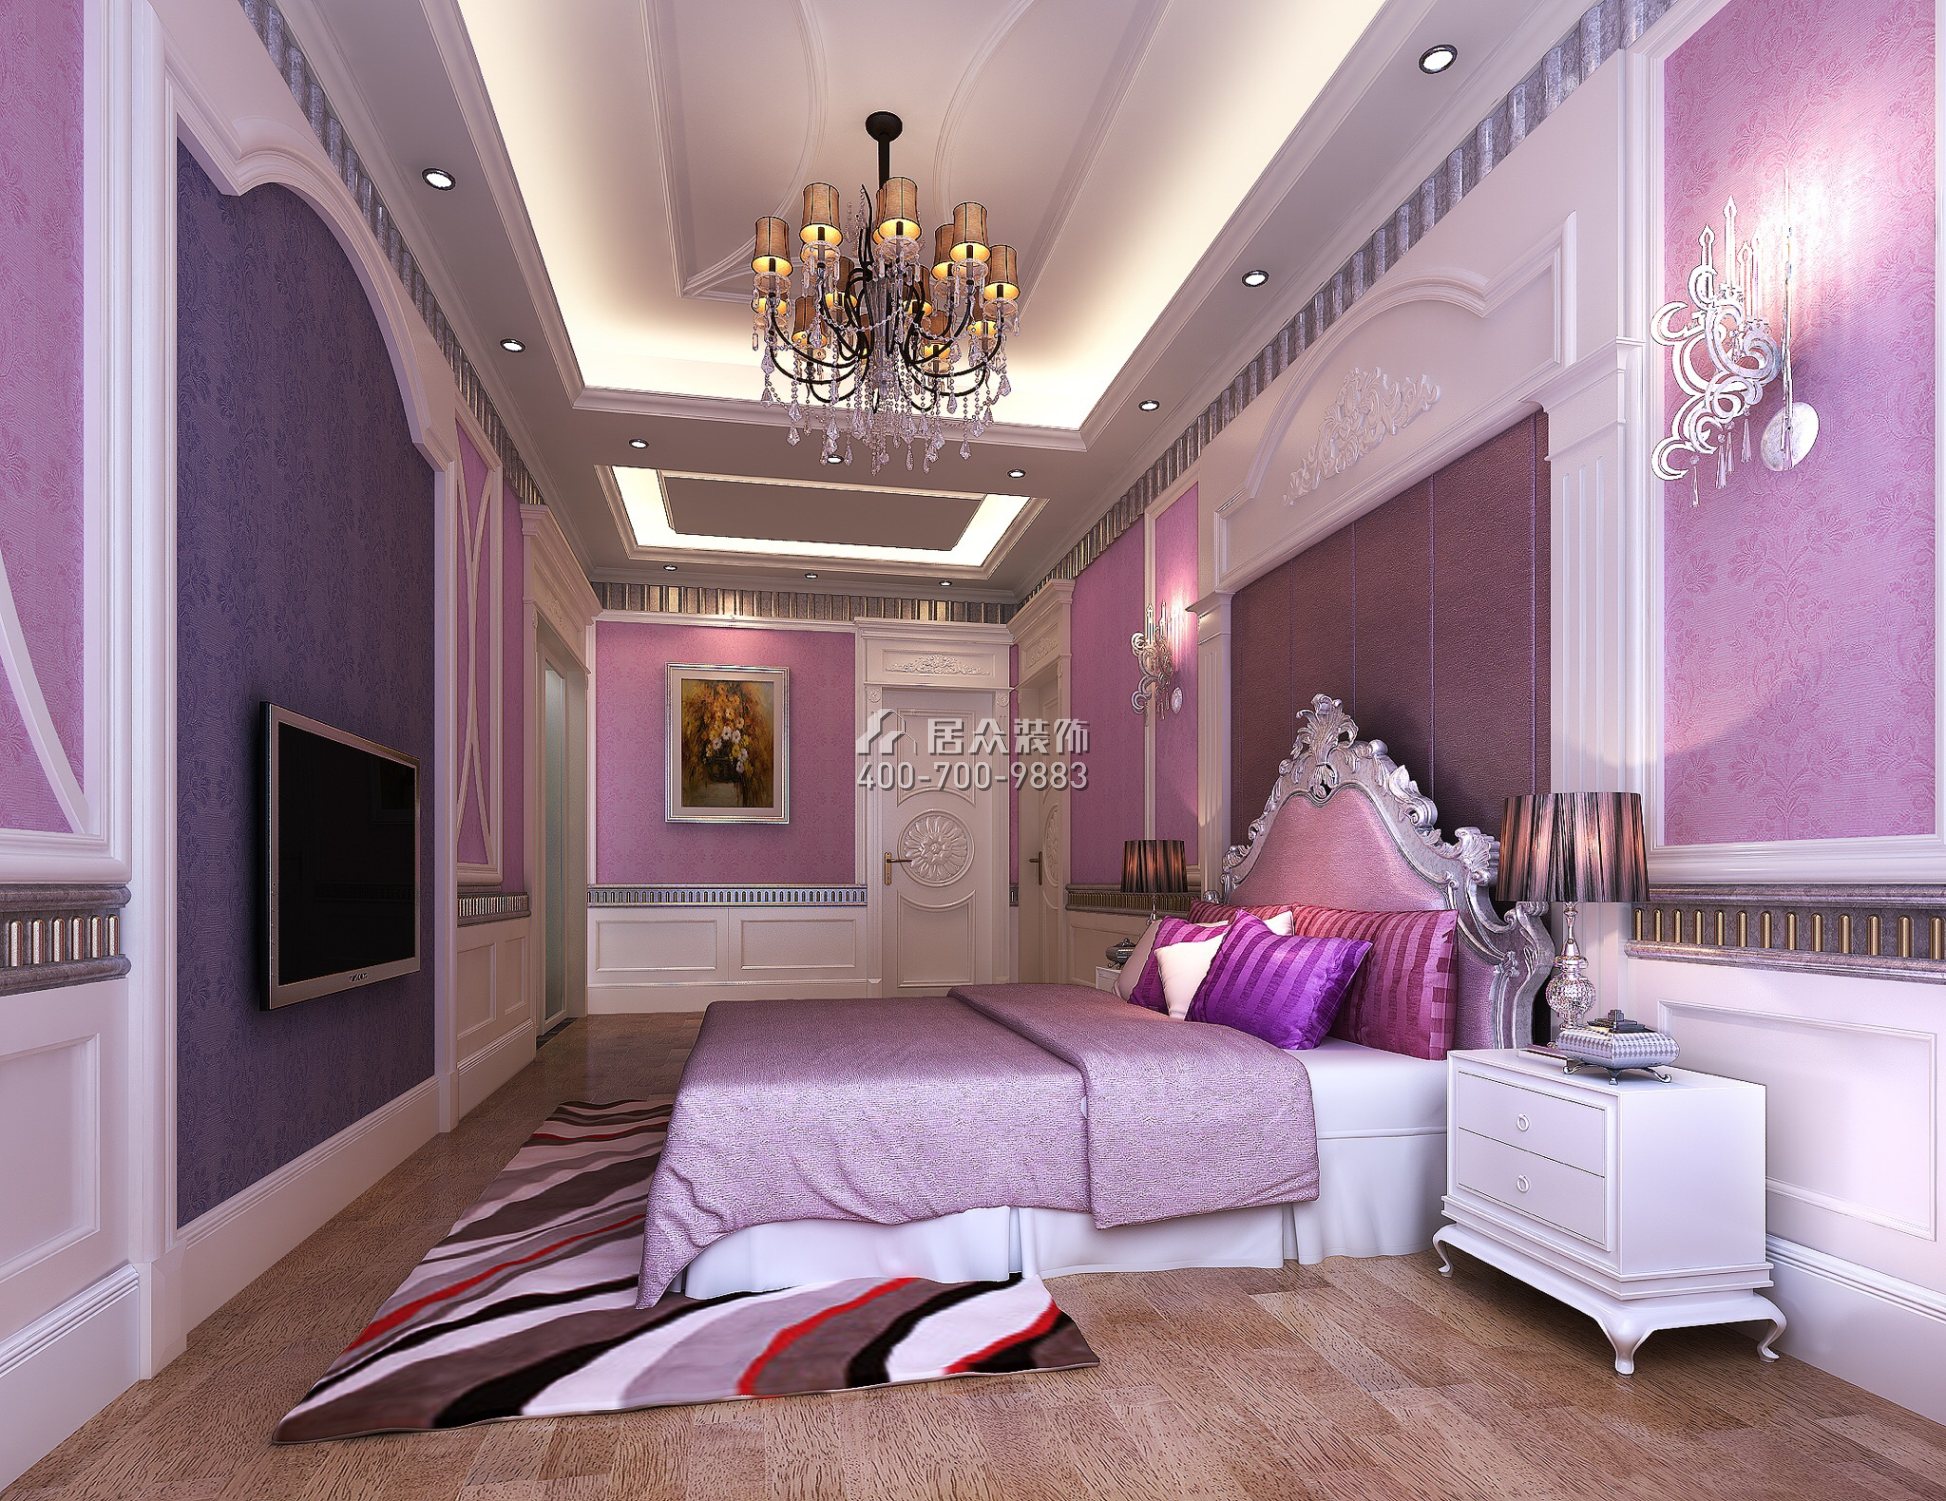 萬科蘭喬圣菲685平方米歐式風格別墅戶型臥室裝修效果圖